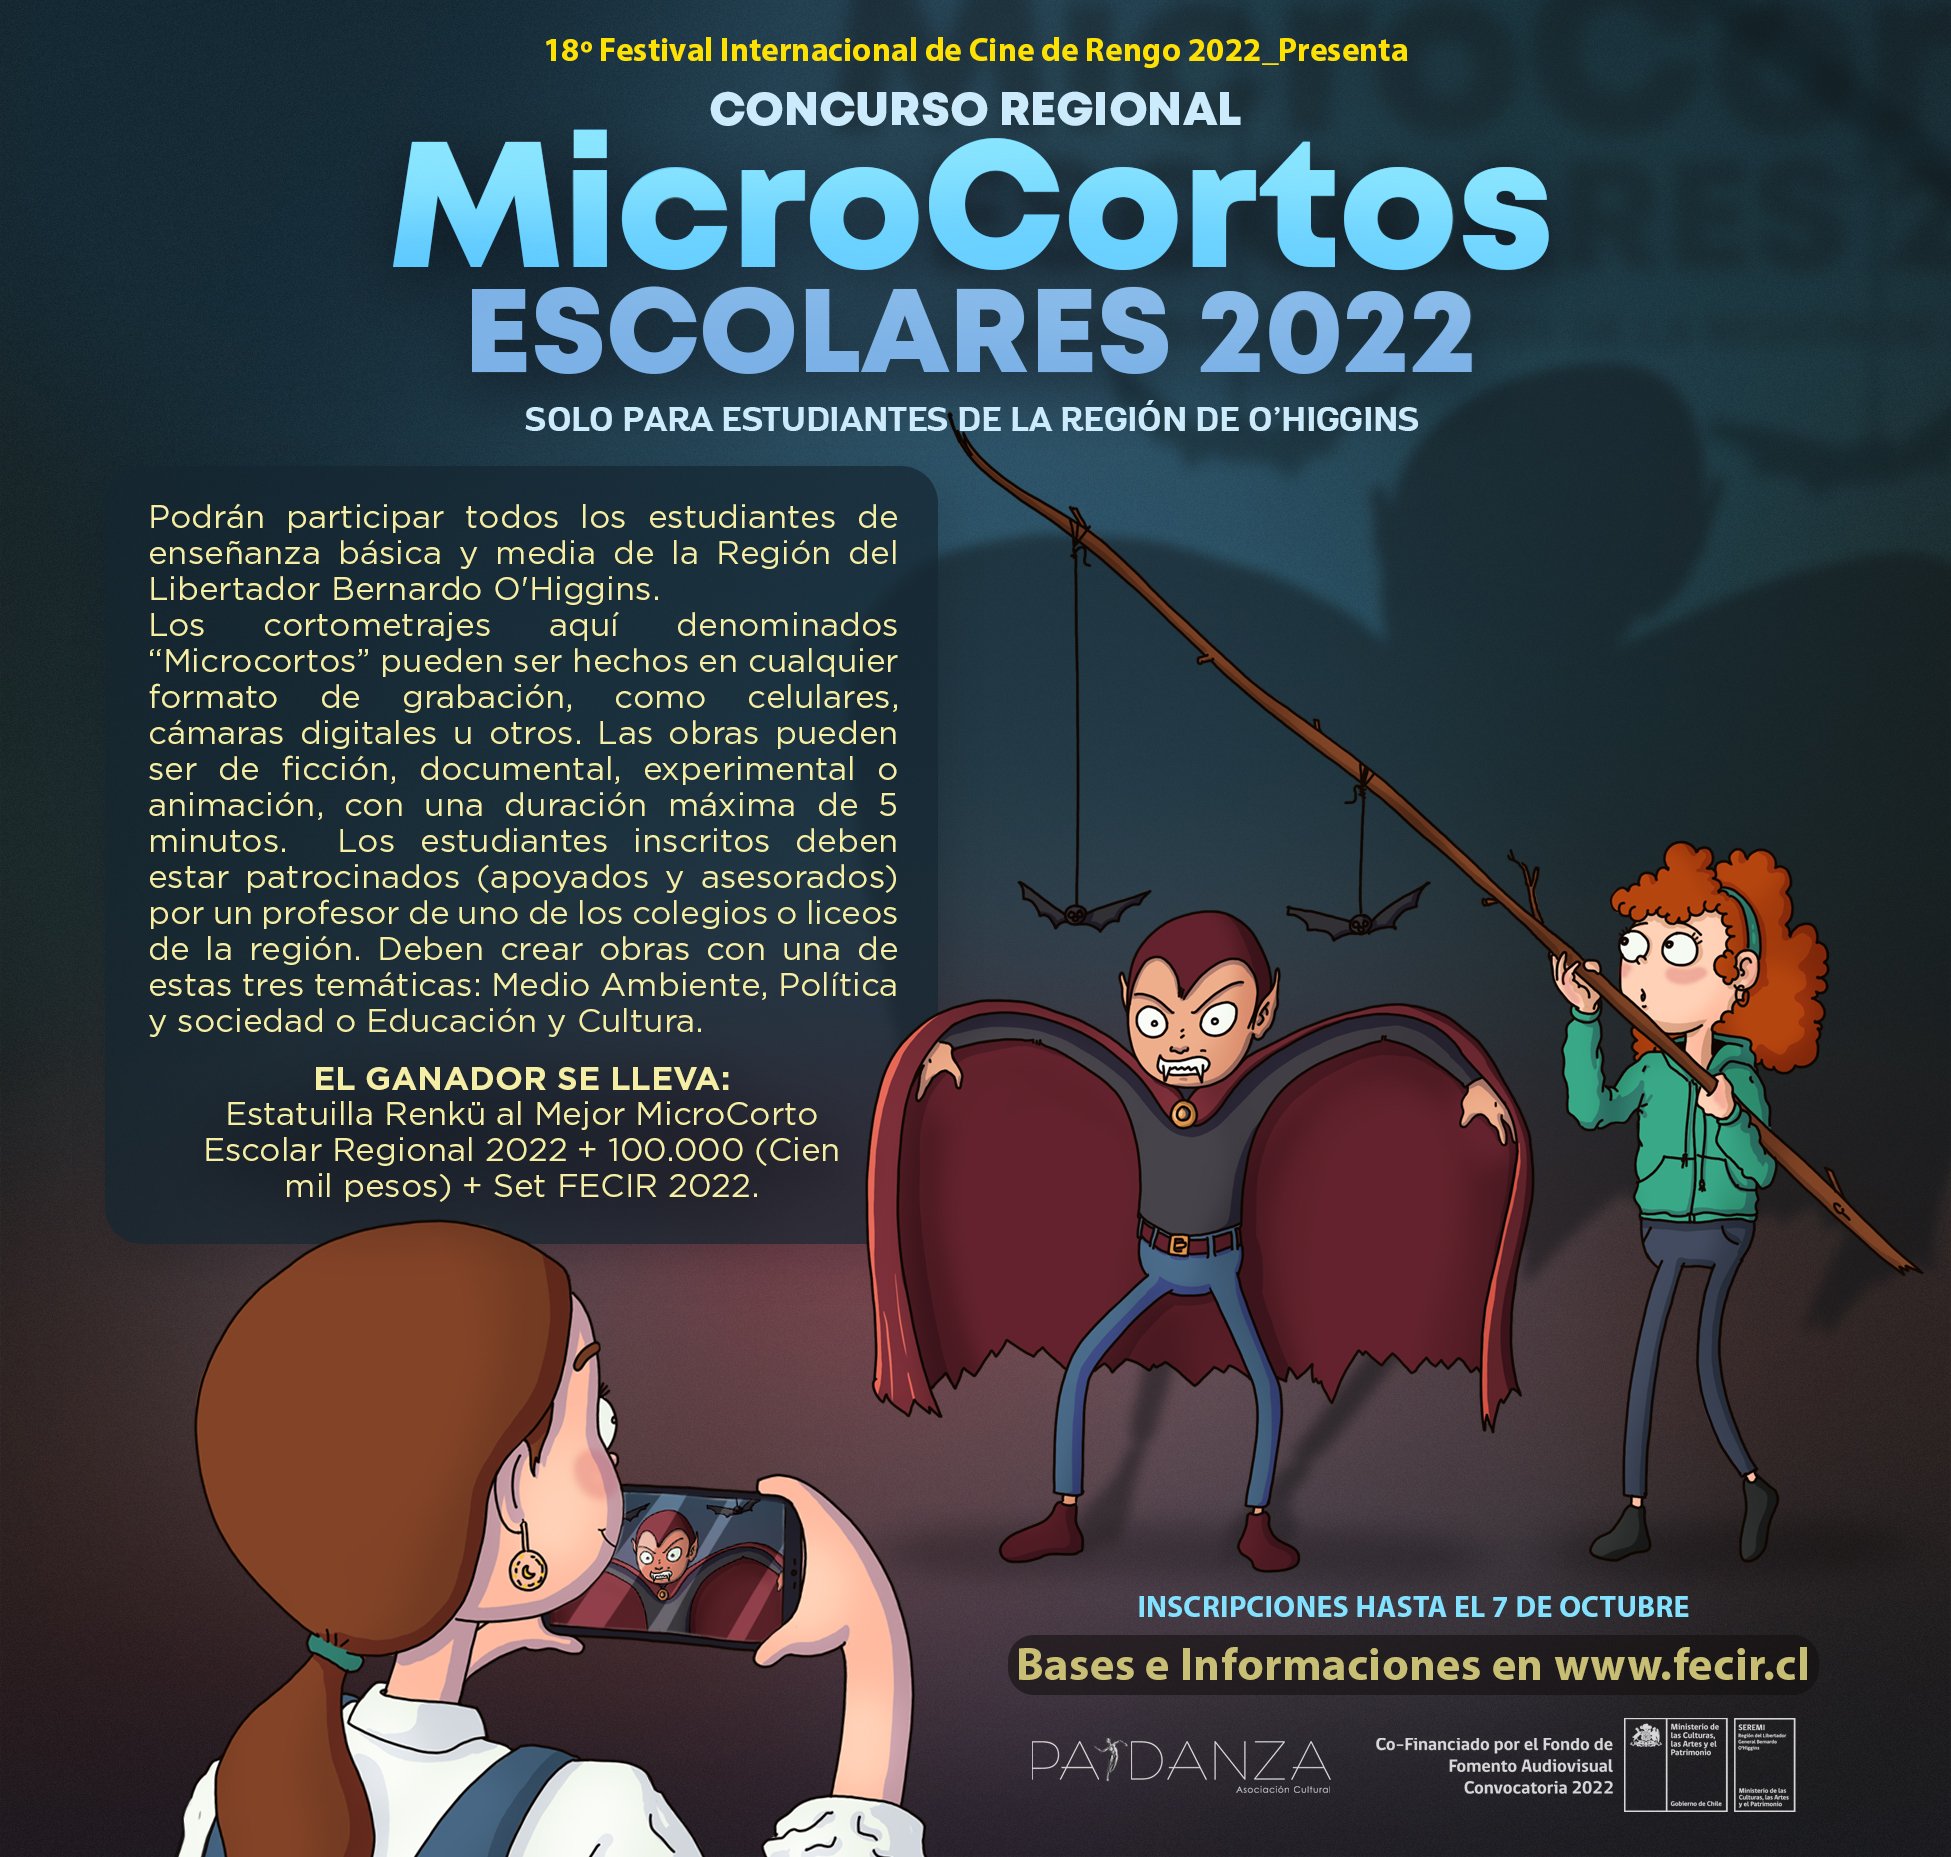 ÚLTIMAS SEMANAS PARA POSTULAR AL CONCURSO DE MICROCORTOS ESCOLARES 2022